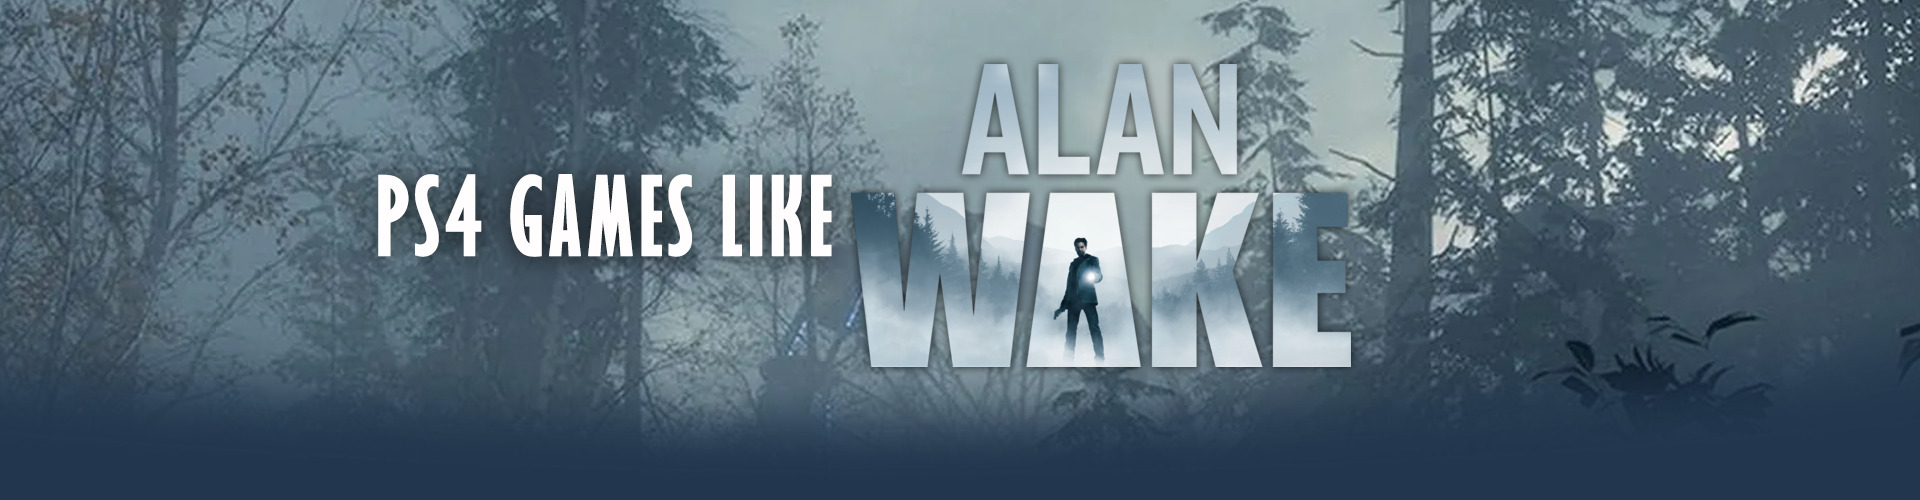 PS4-spellen zoals Alan Wake